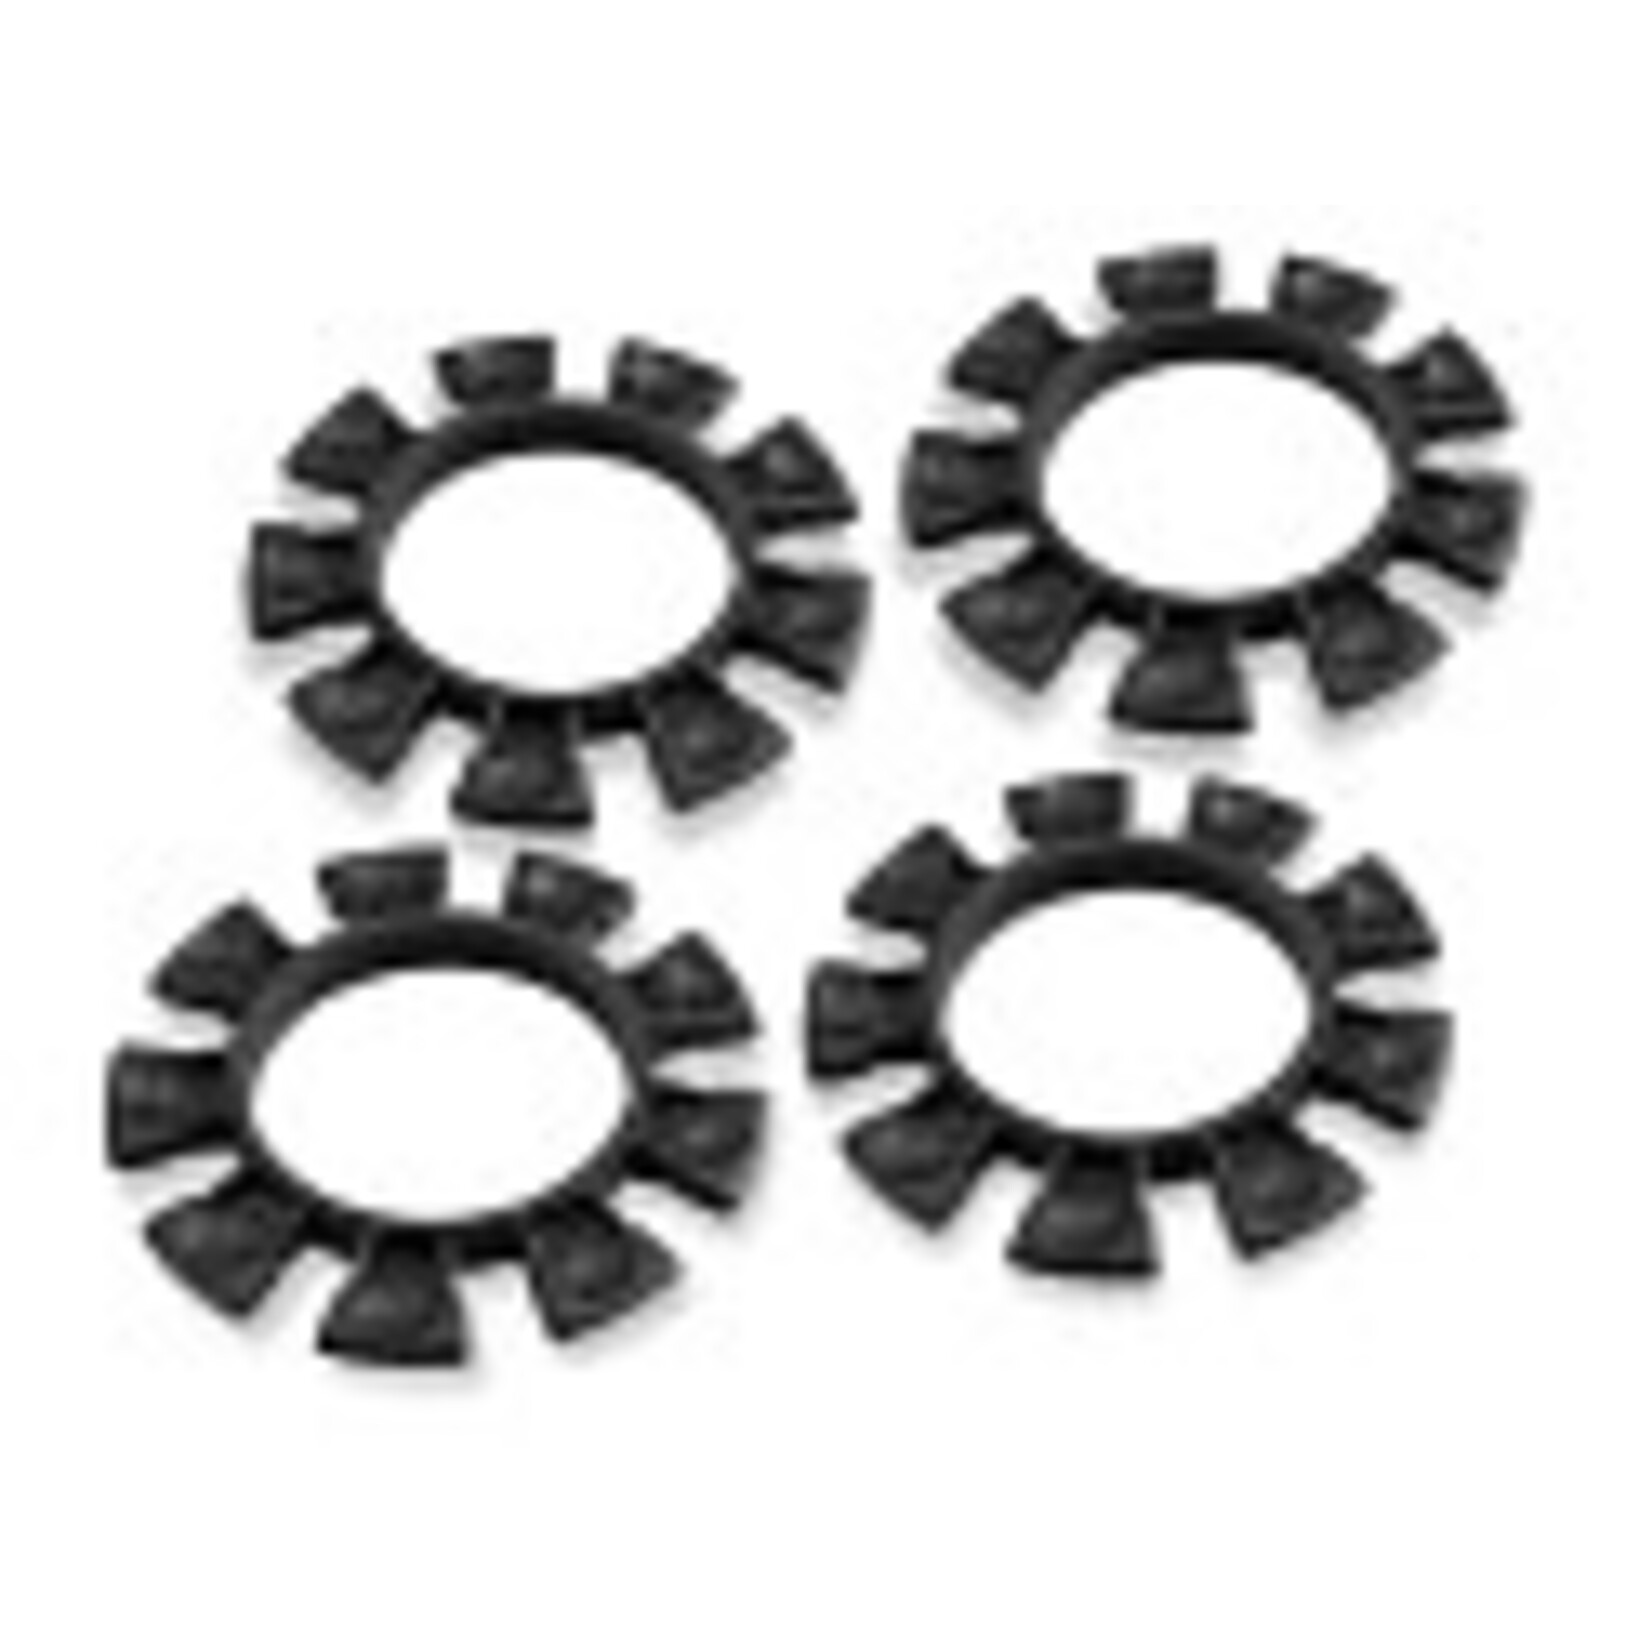 J Concepts JCO2212-2 Satellite Tire Gluing Rubber Bands - Black